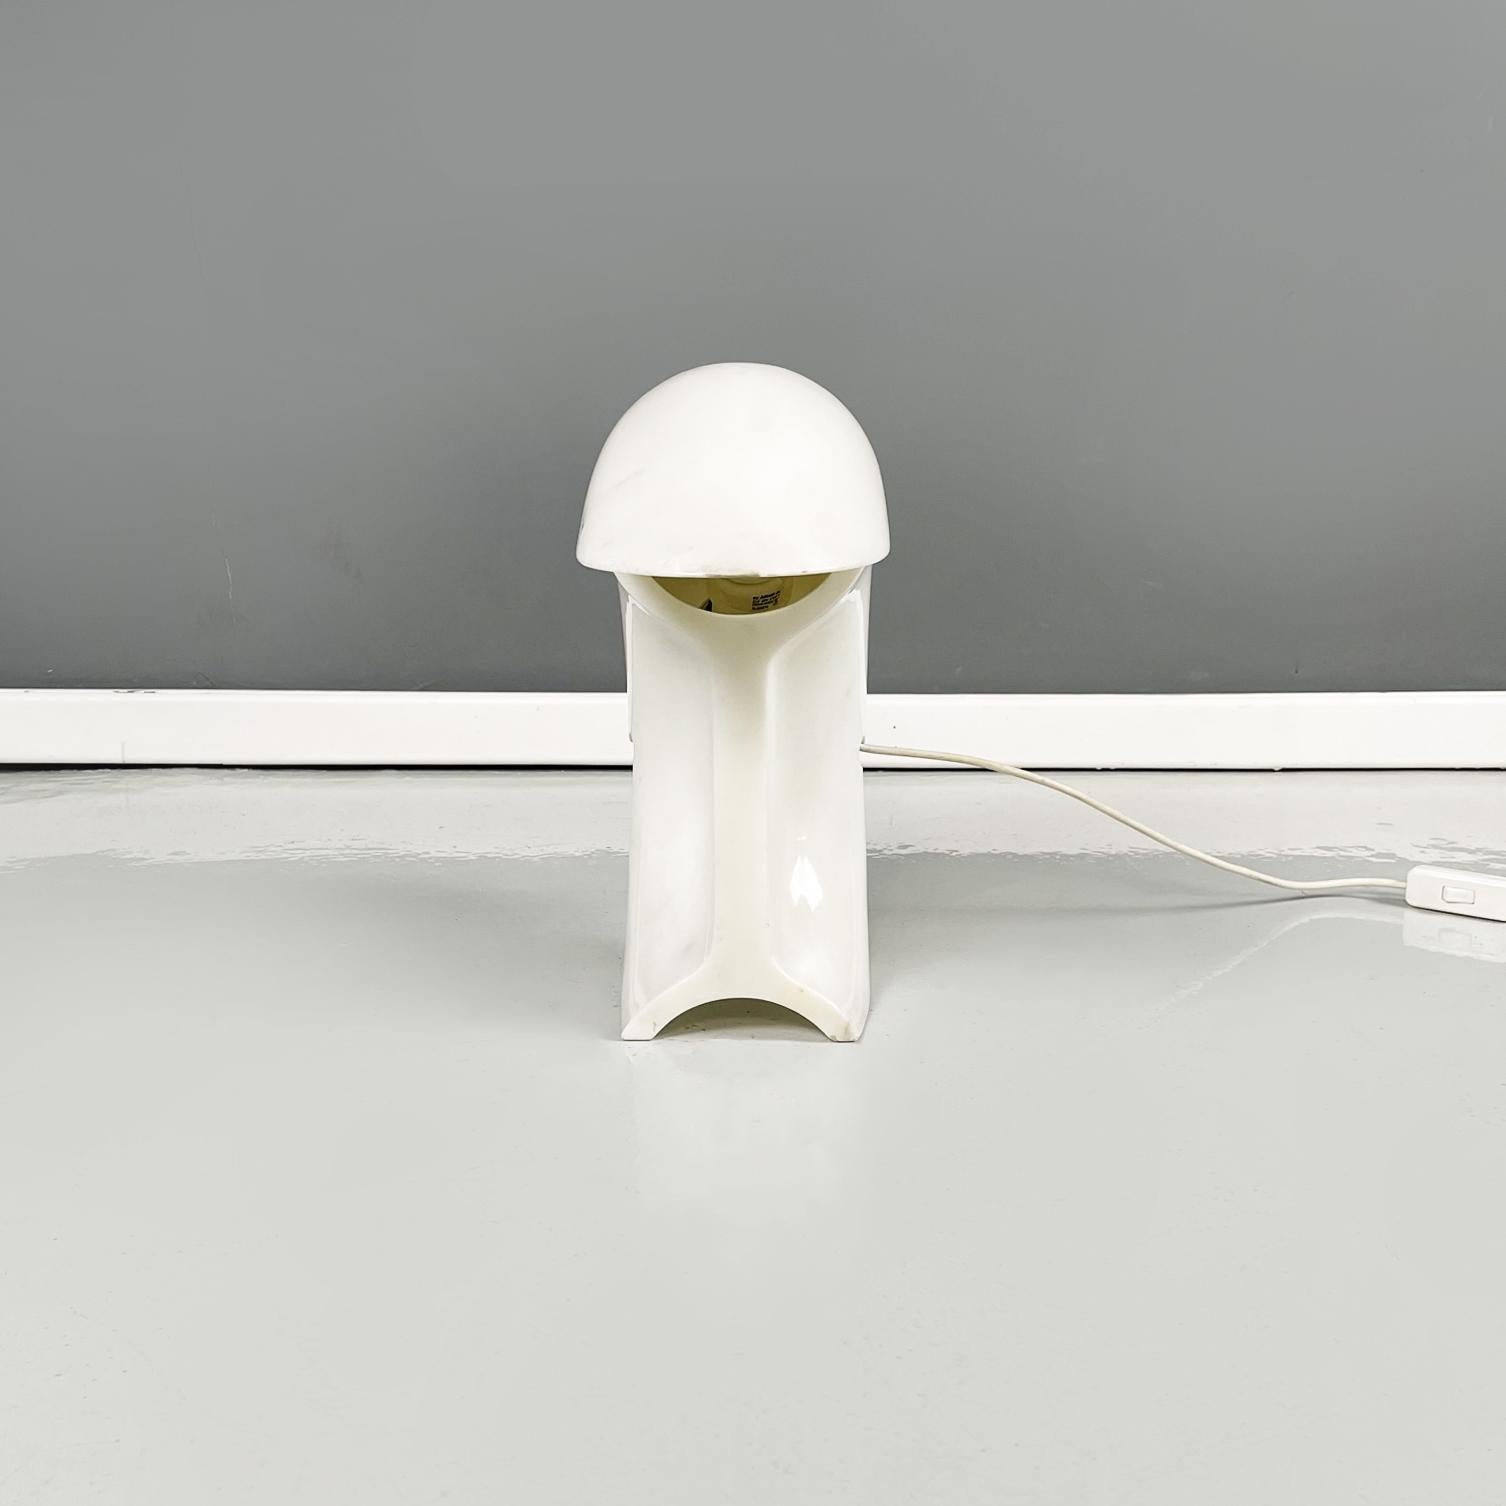 Lampe de table moderne italienne en marbre de Carrare Biagio de Tobia Scarpa pour Flos, 1970
Iconique et fantastique lampe de table mod. Biagio avec lumière directe et structure arrondie obtenue d'un seul bloc de marbre blanc de Carrare. La source